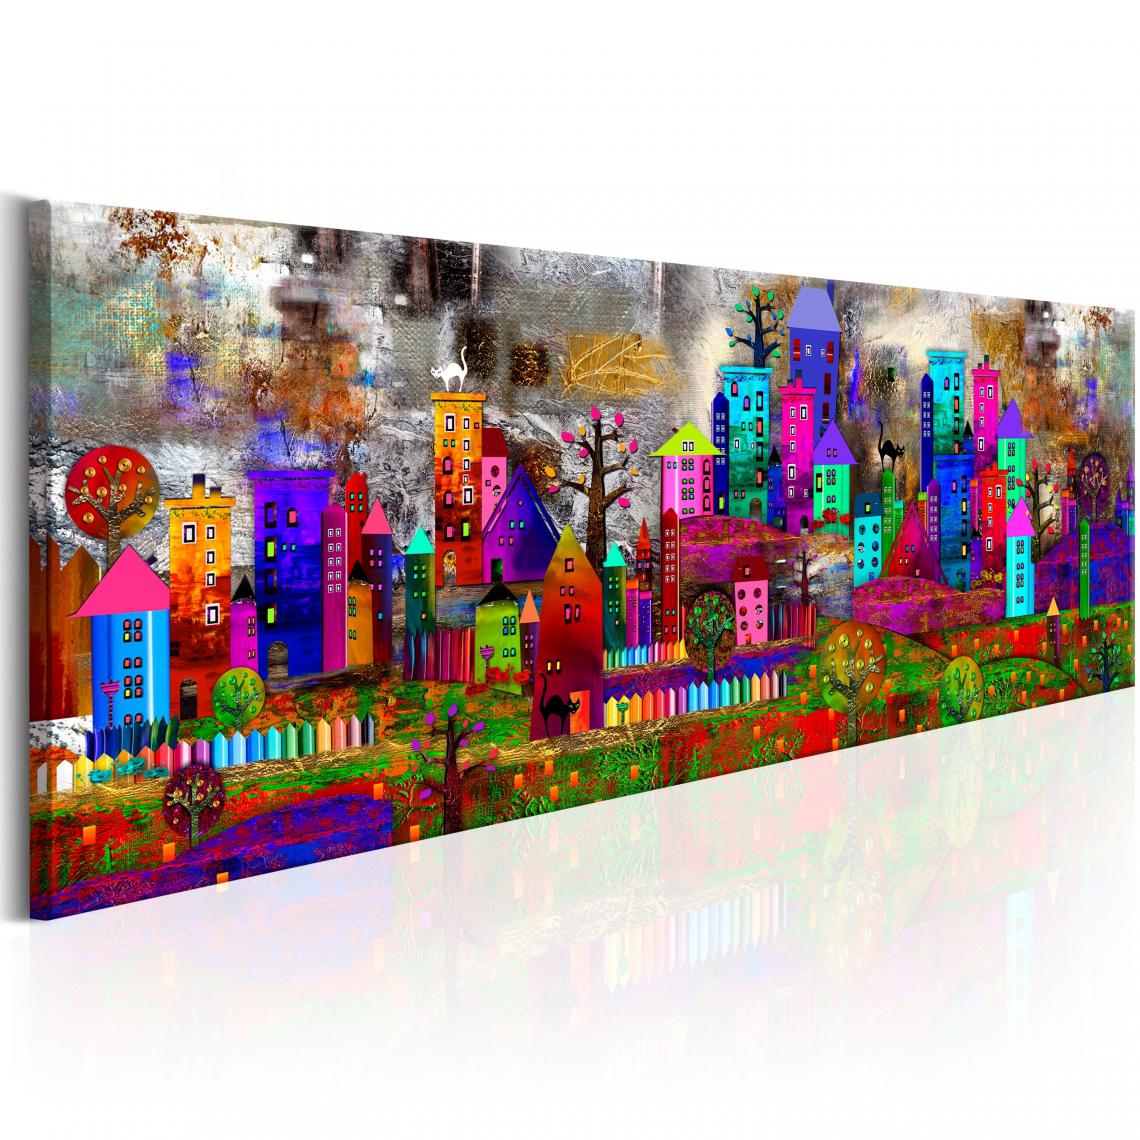 Decoshop26 - Tableau sur toile décoration murale image imprimée cadre en bois à suspendre Ville fantastique 120x40 cm 11_0008388 - Tableaux, peintures